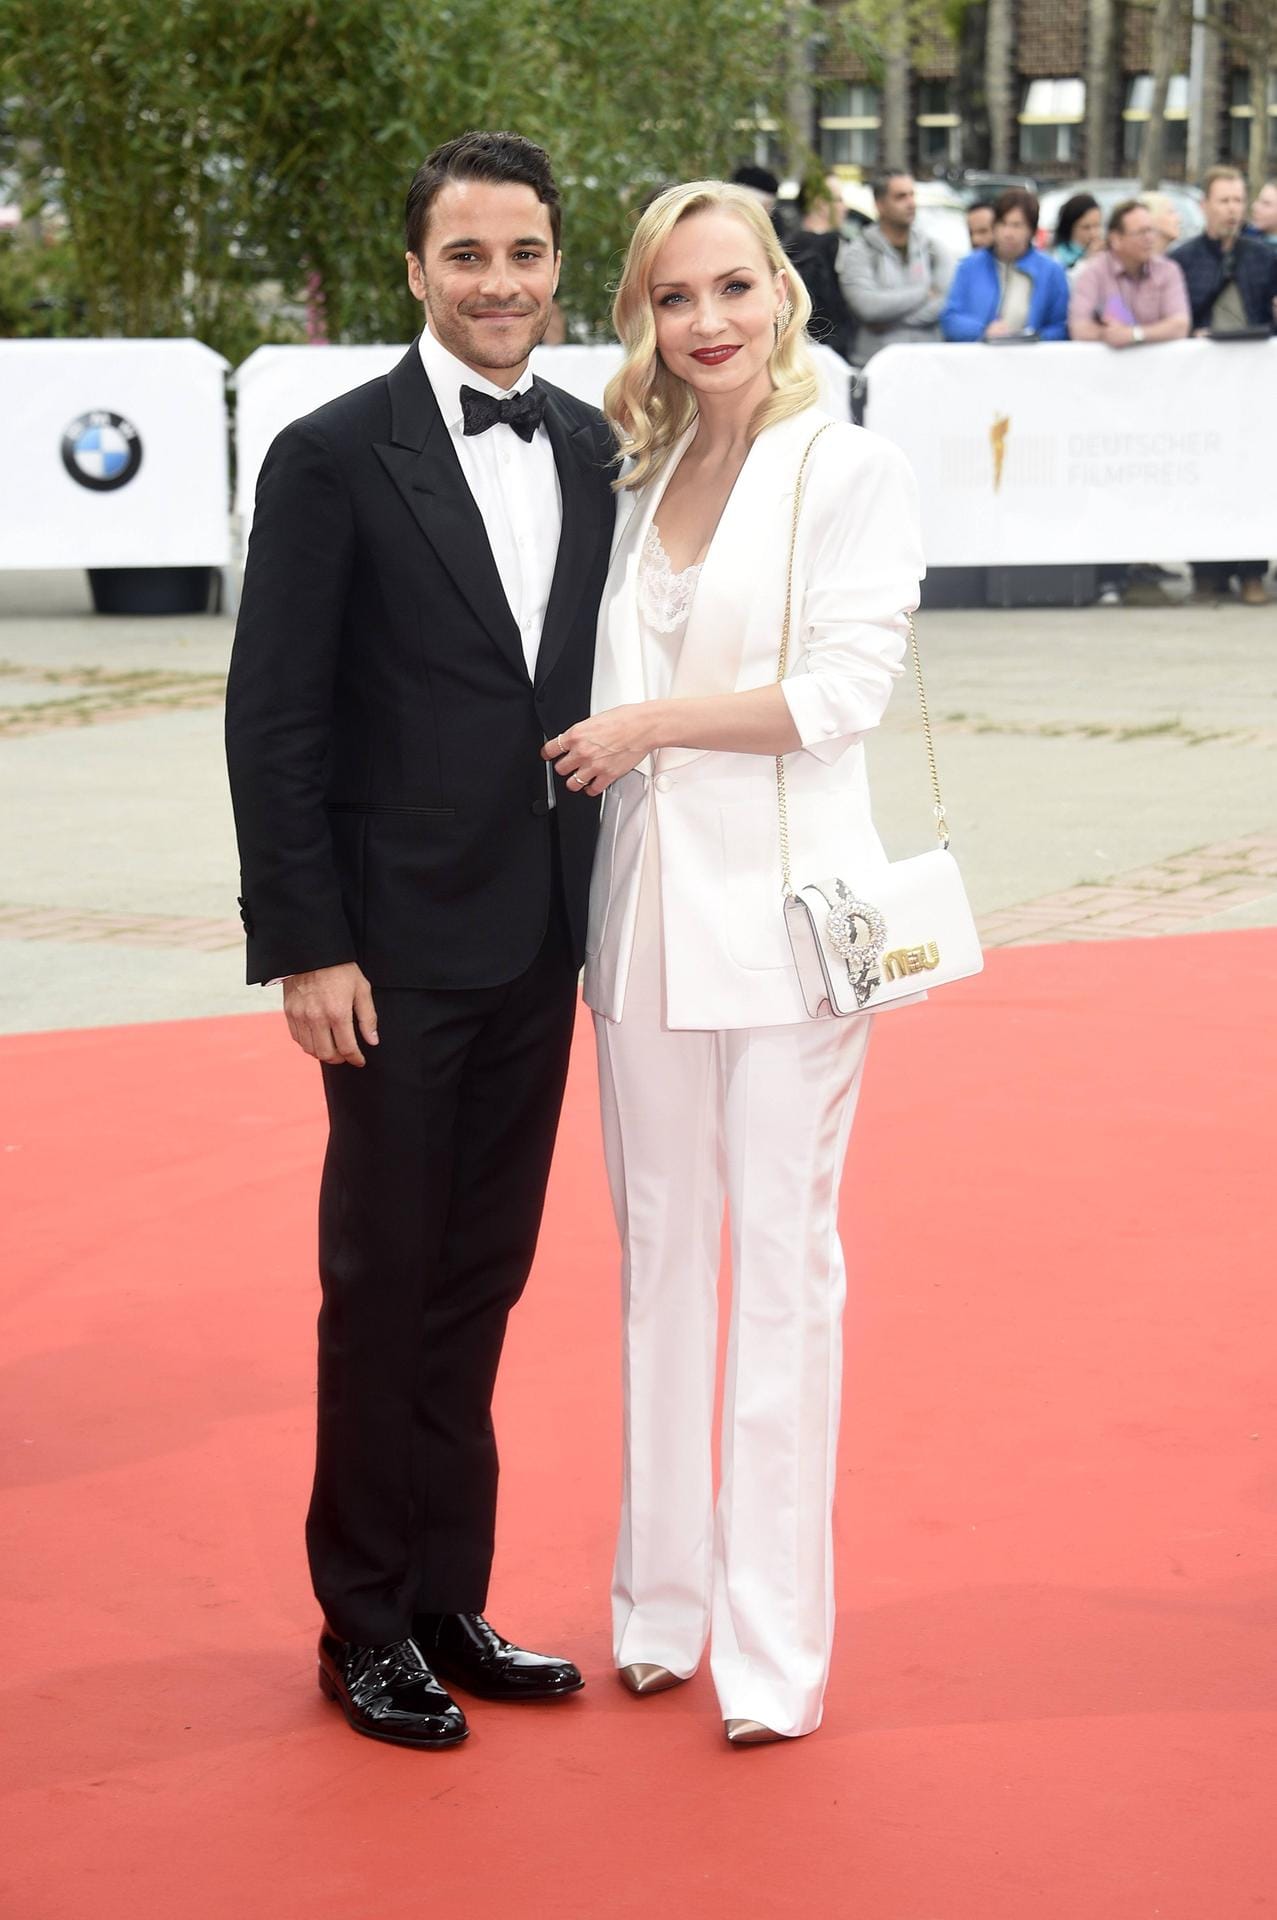 Kostja Ullmann und Janin Ullmann: Bei der Verleihung des Deutschen Filmpreises spazierten sie noch glücklich über den roten Teppich. Nun ist aber nach zwölf Jahren aus.